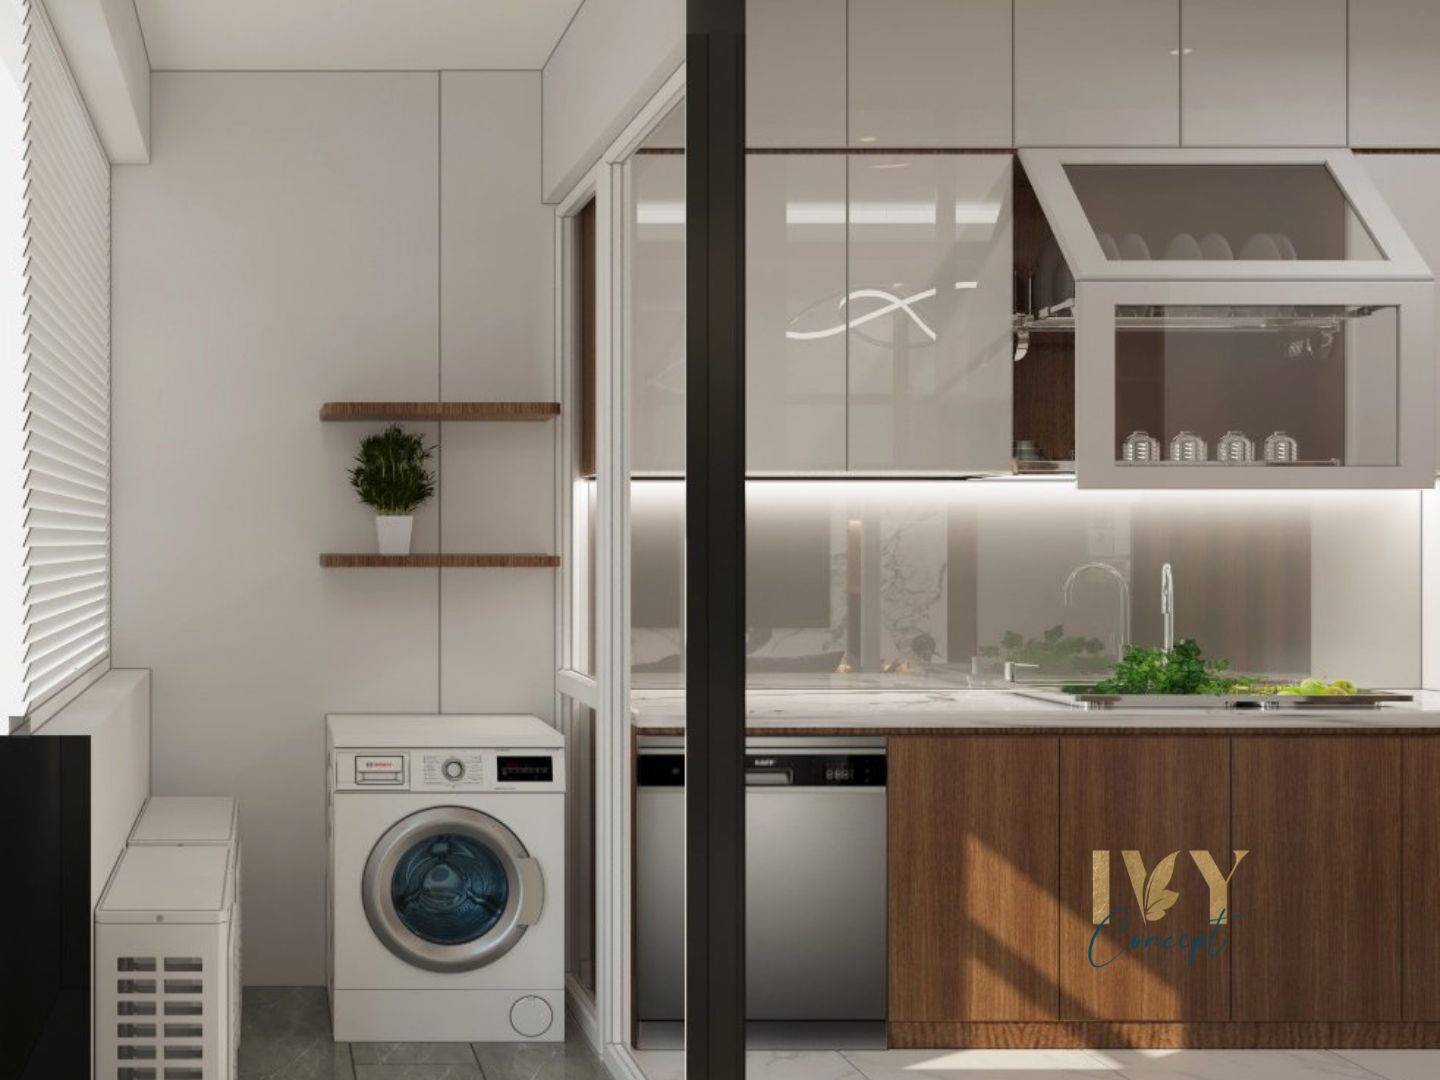 Phòng bếp, lô gia, phong cách Hiện đại Modern, thiết kế concept nội thất, căn hộ Petro Landmark